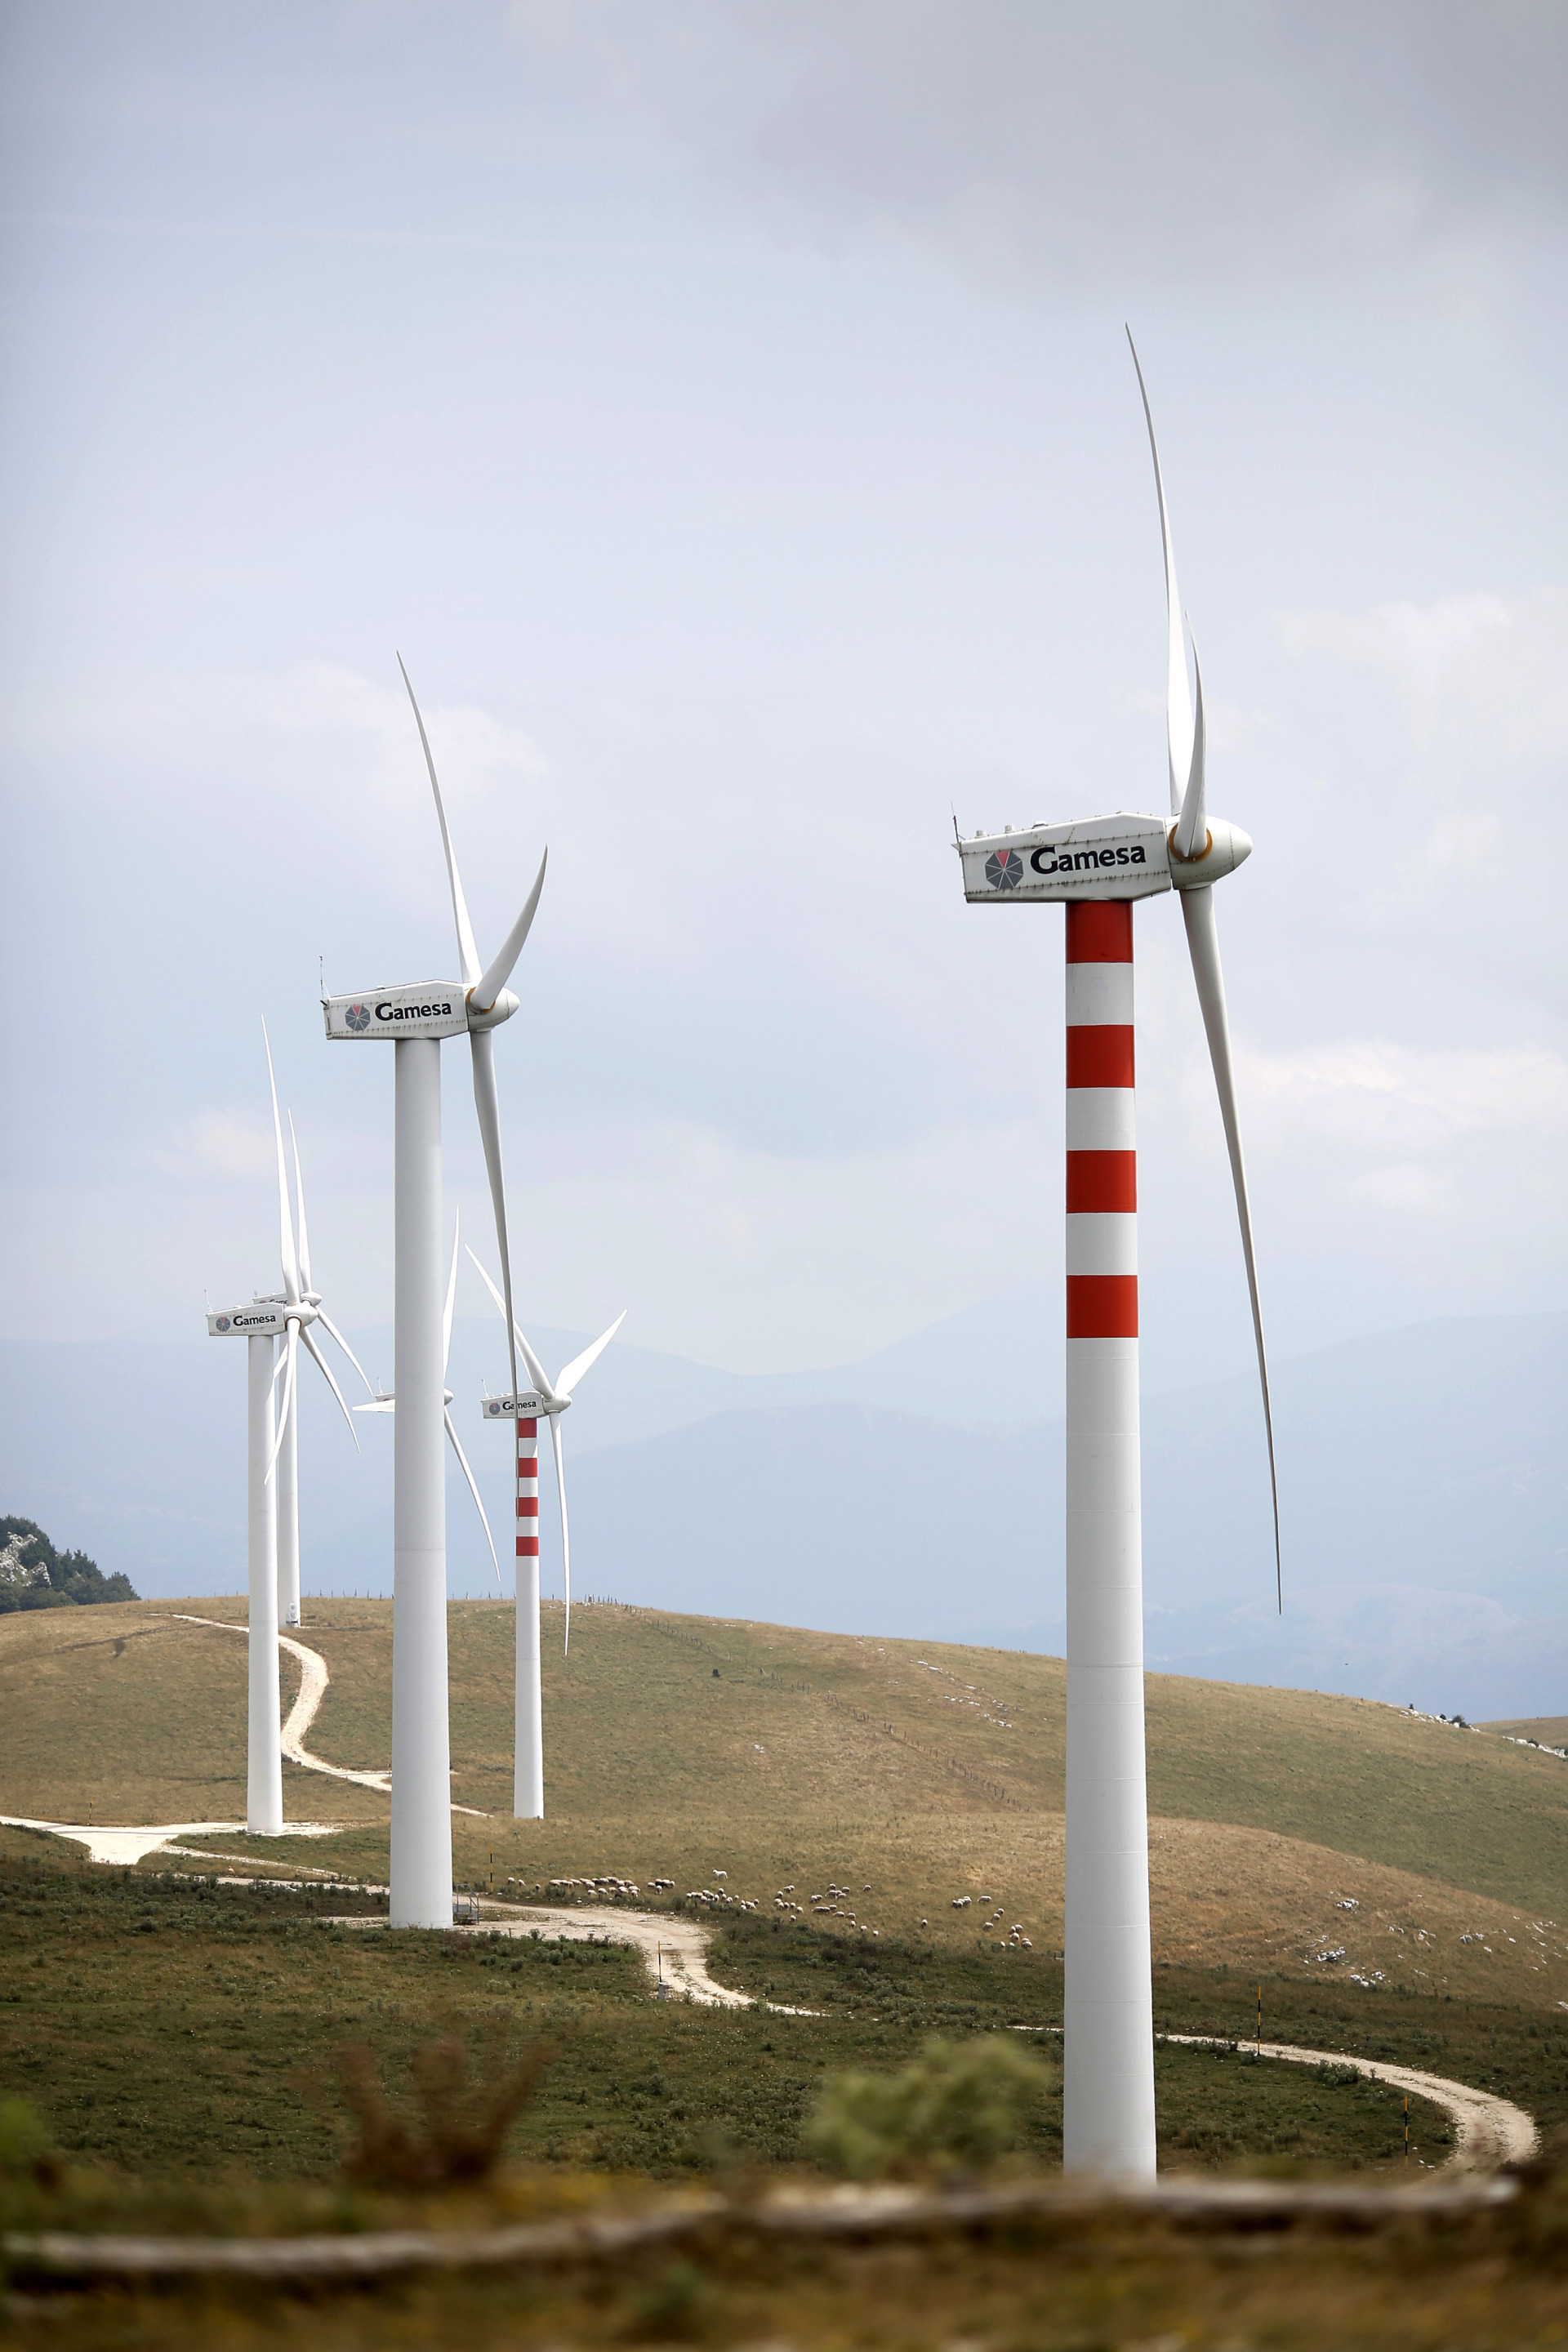 Wind farm  Enel Green Power